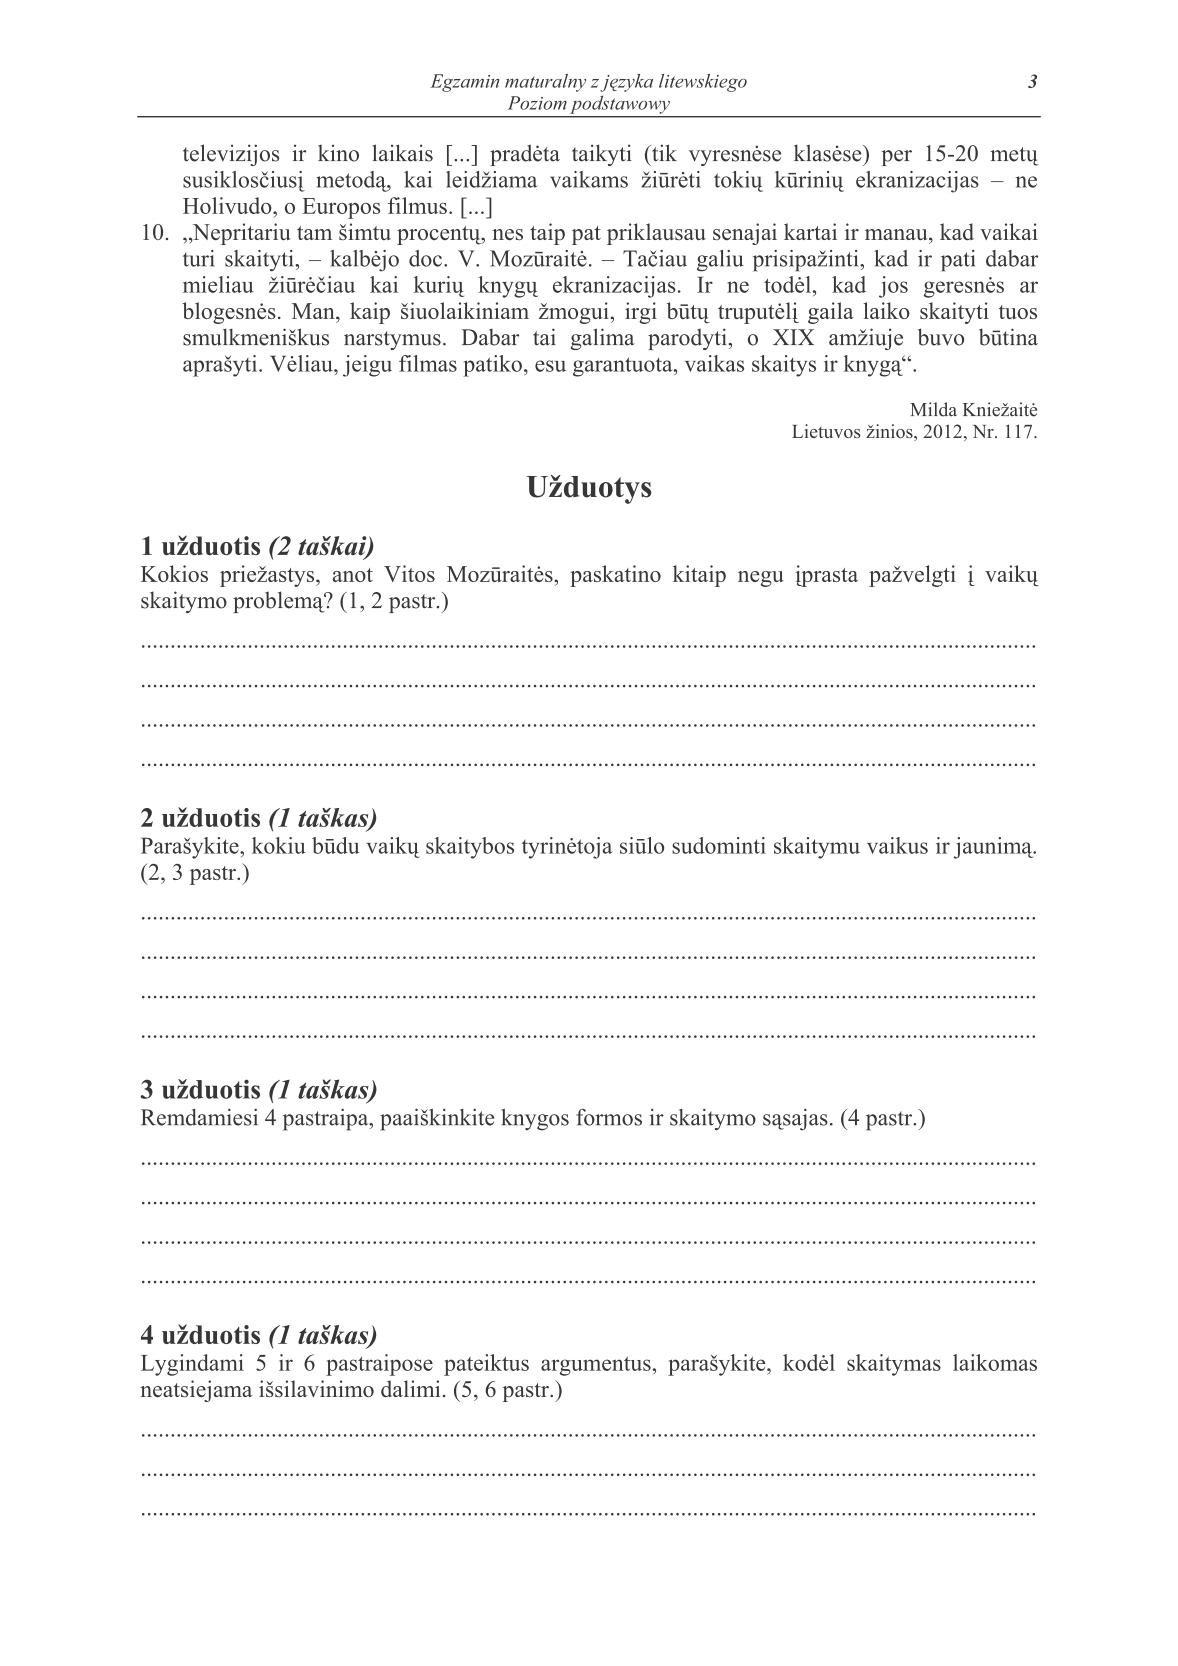 pytania-jezyk-litewski-poziom-podstawowy-matura-2014-str.3